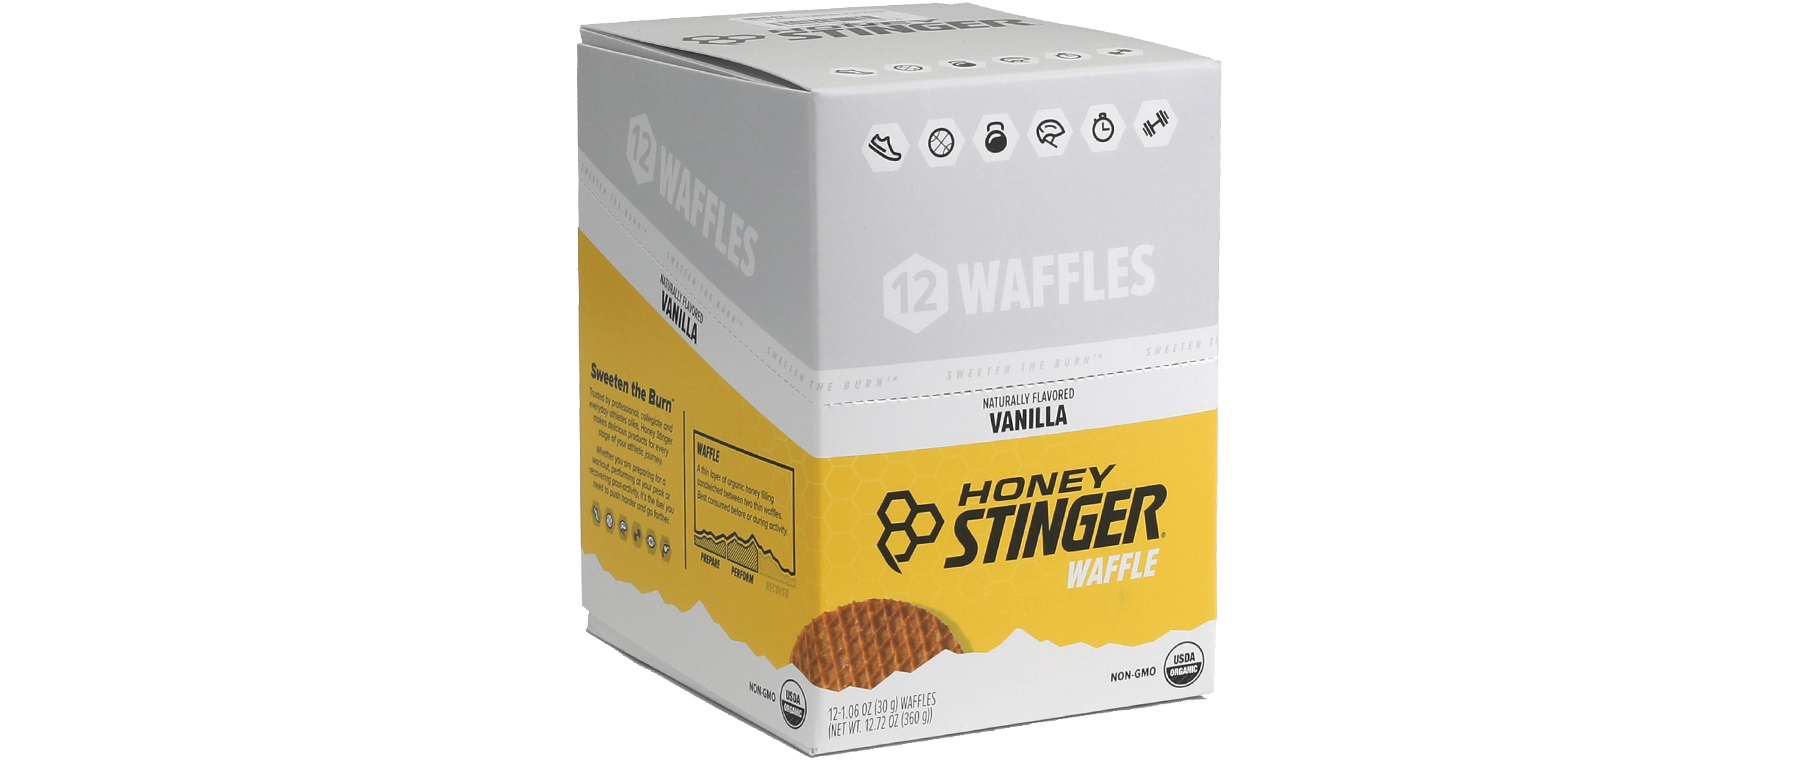 Honey Stinger Waffle Box of 12